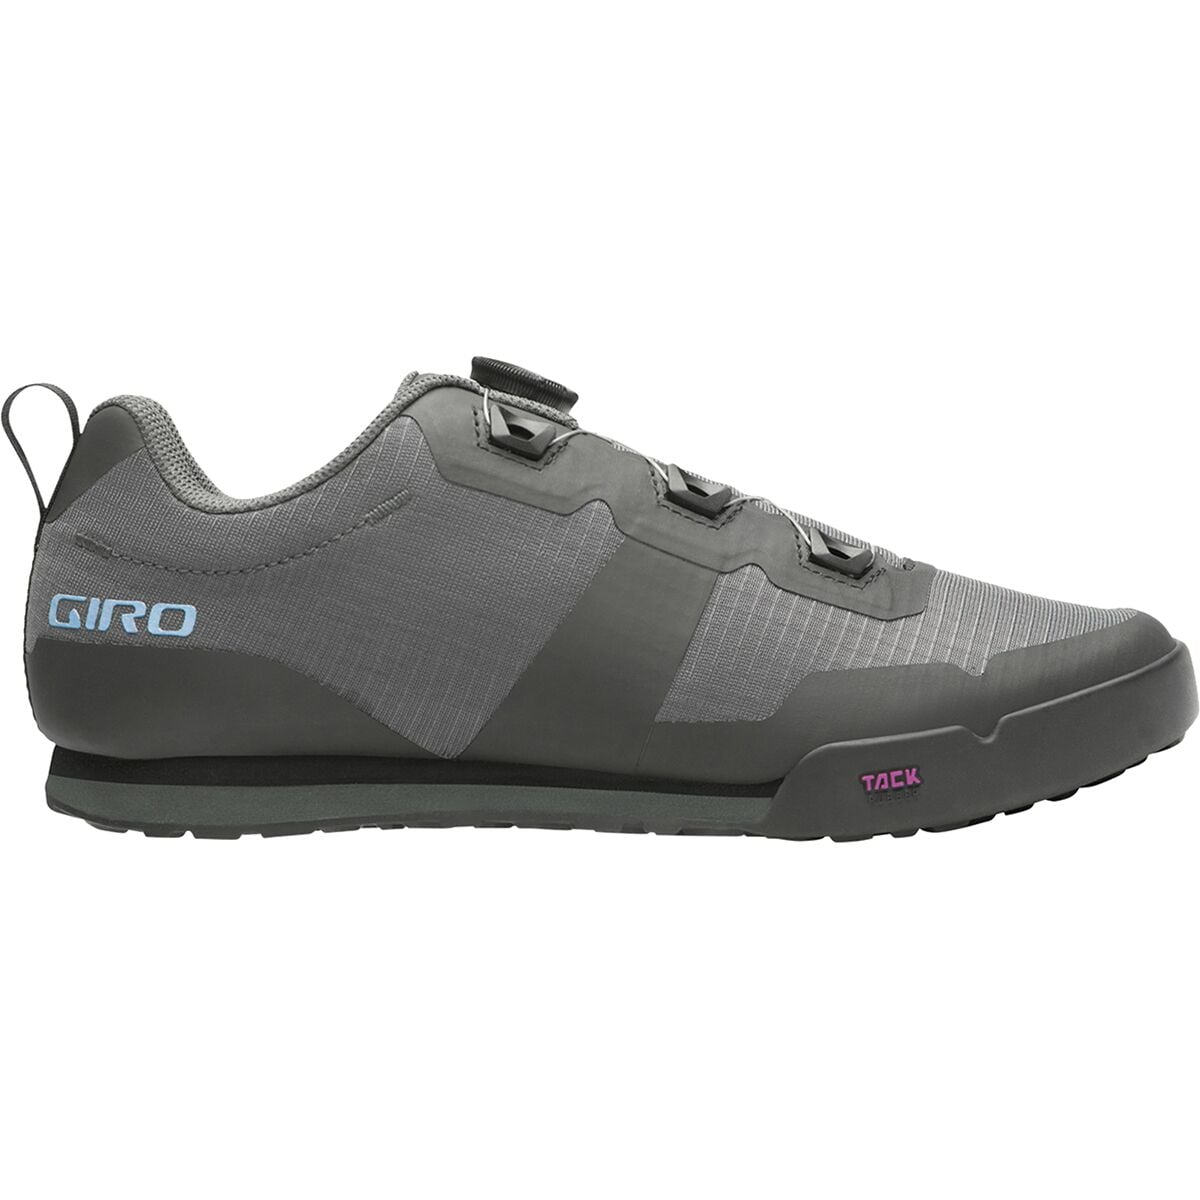 Giro Tracker Mountain BIke Shoe - Women's Dark Shadow, 41.0